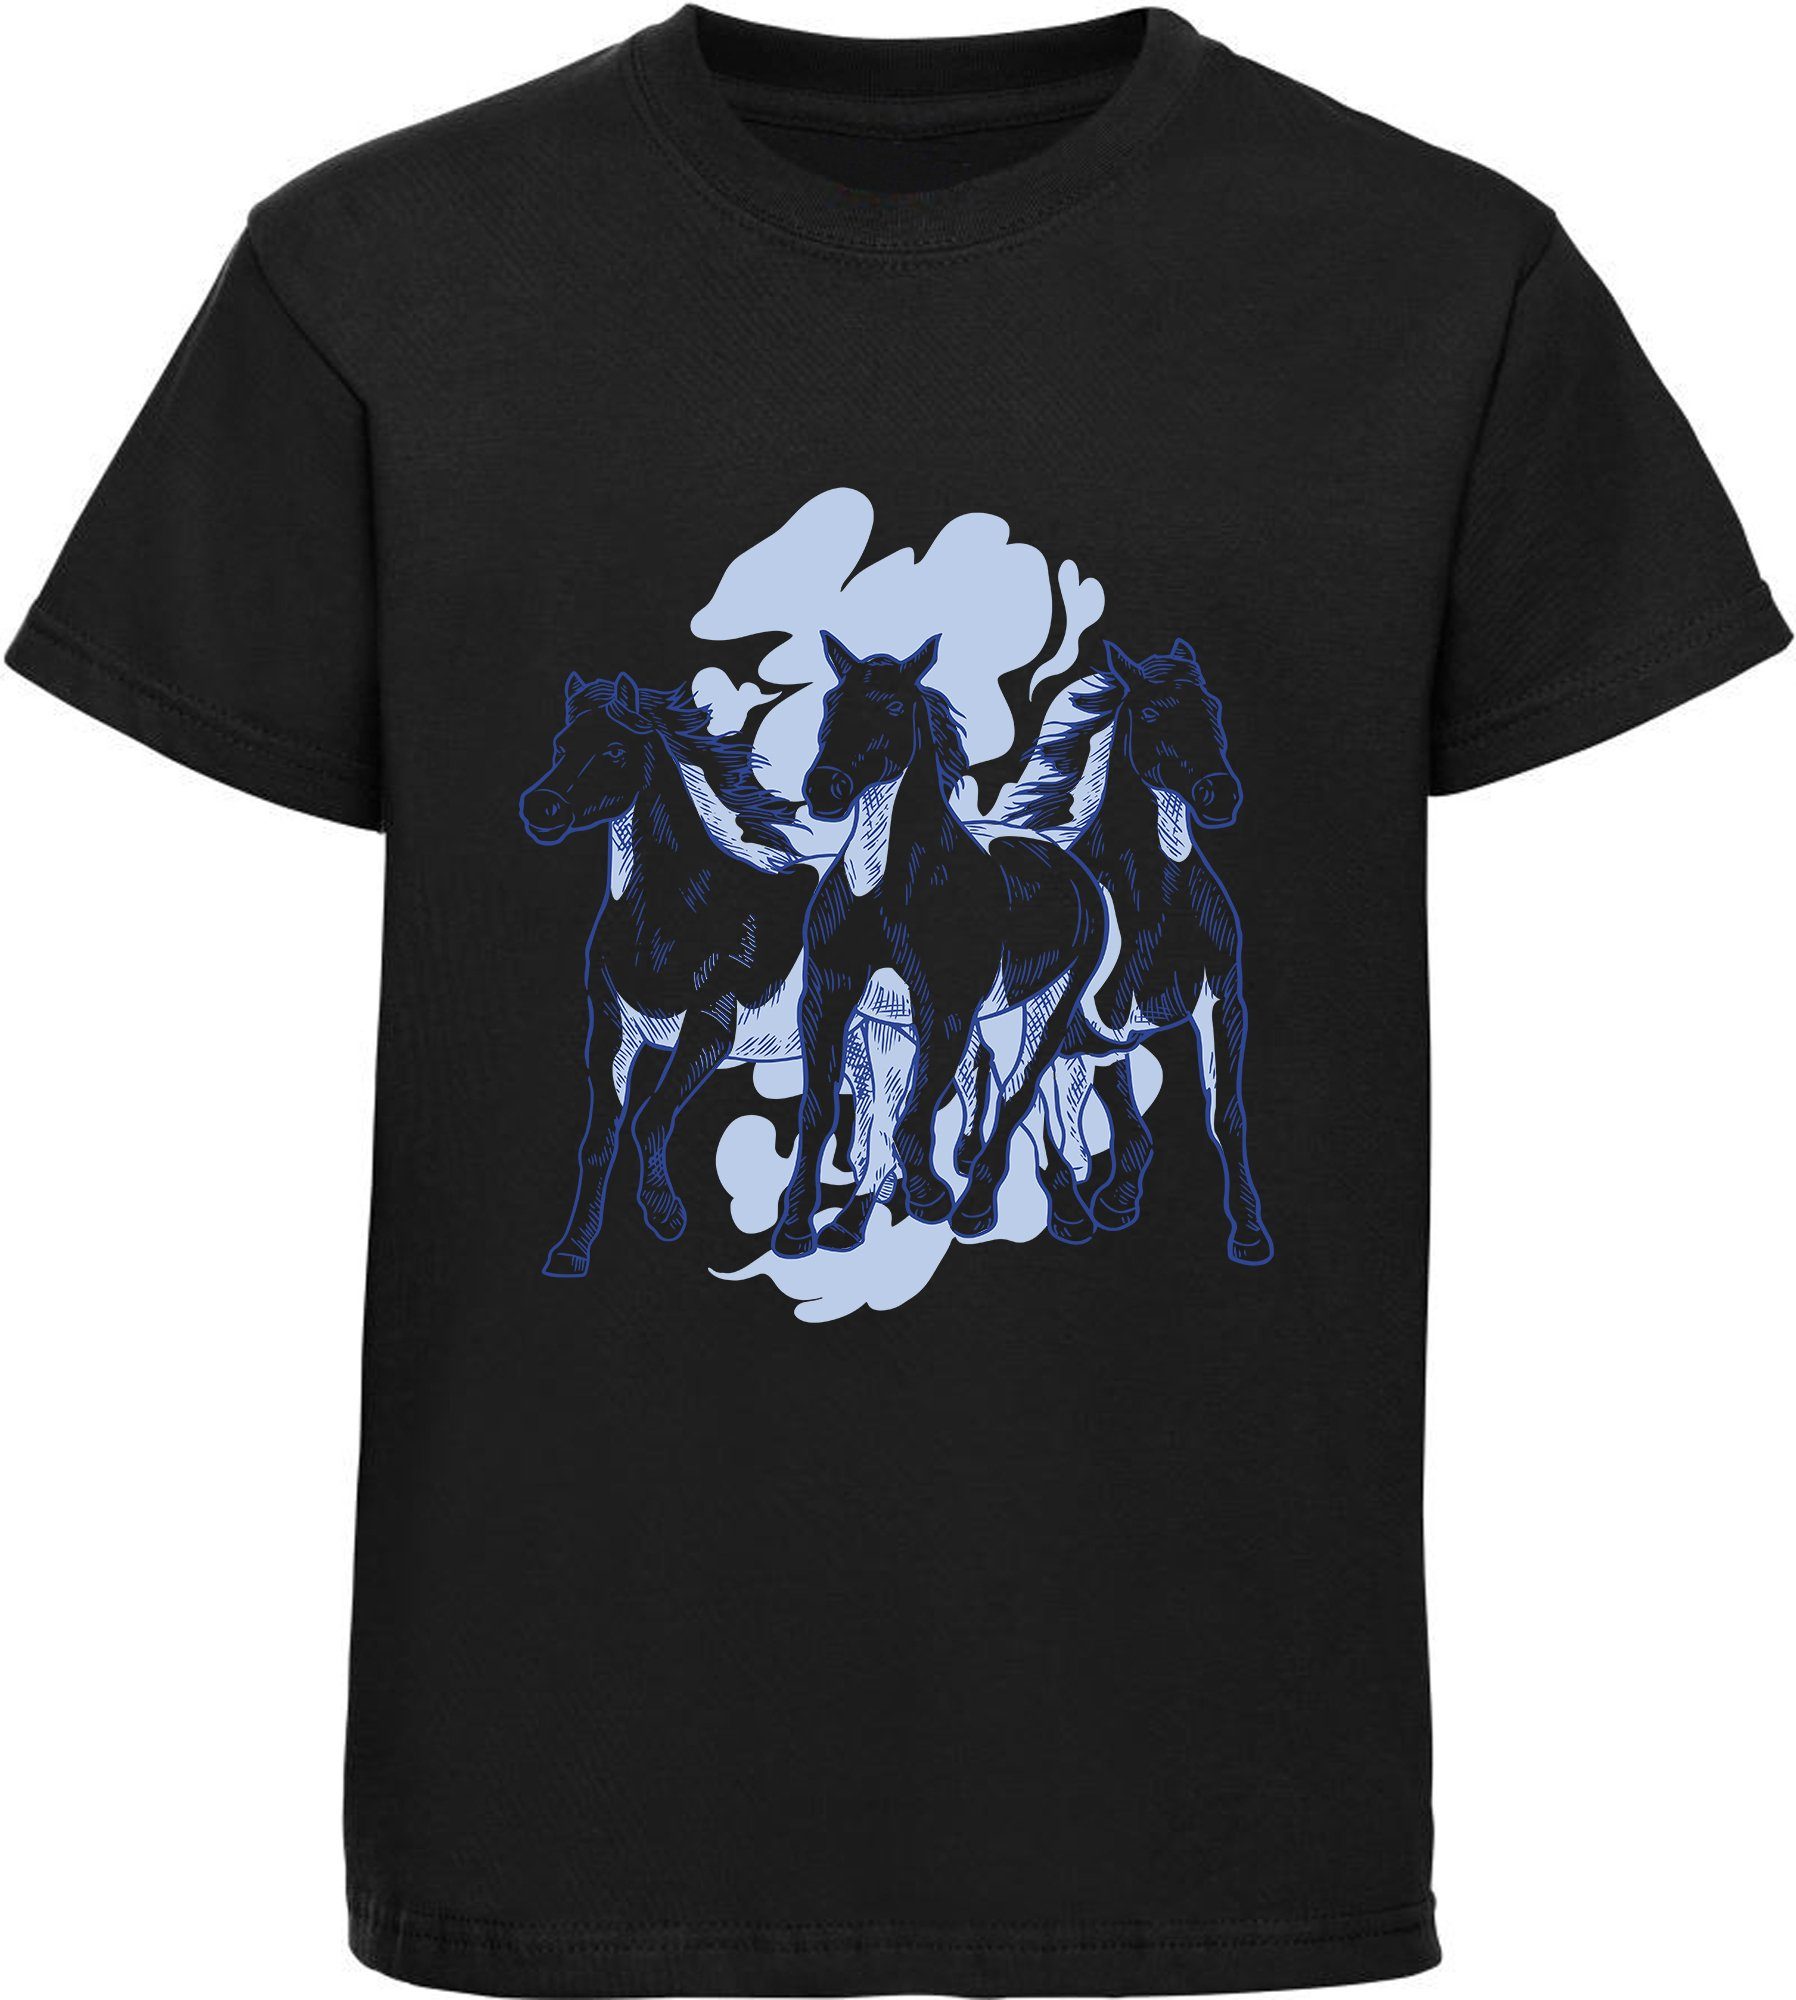 MyDesign24 Print-Shirt bedrucktes Mädchen T-Shirt mit 3 schwarz mit i141 Baumwollshirt Pferden Aufdruck